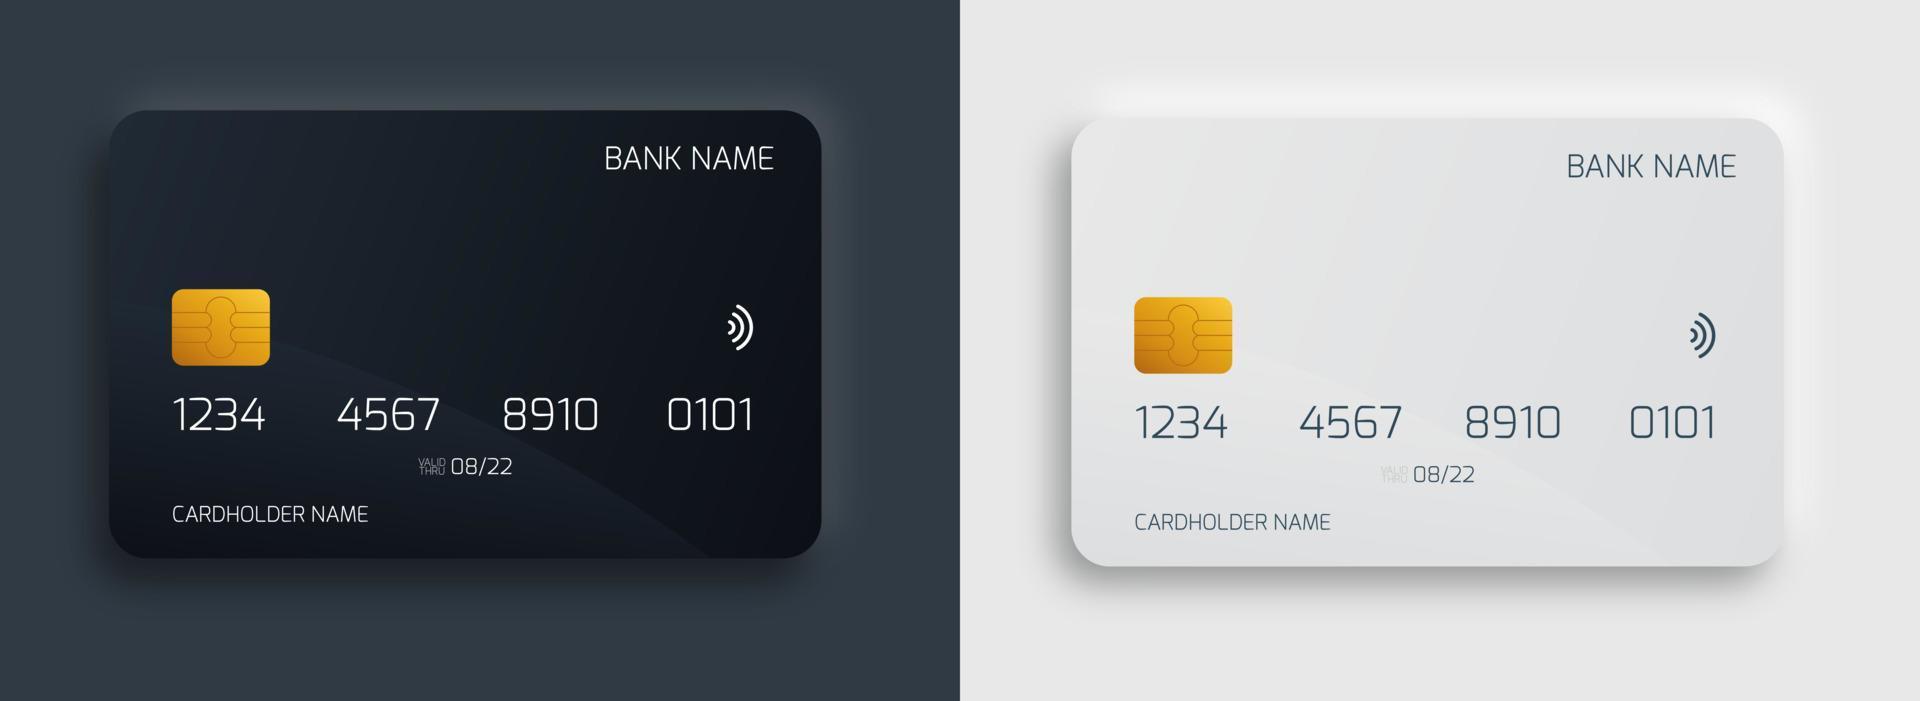 ensemble de modèles de conception de carte bancaire en plastique. maquette de cartes de crédit ou de débit isolées avec concept de style de couleur sombre et claire. vecteur